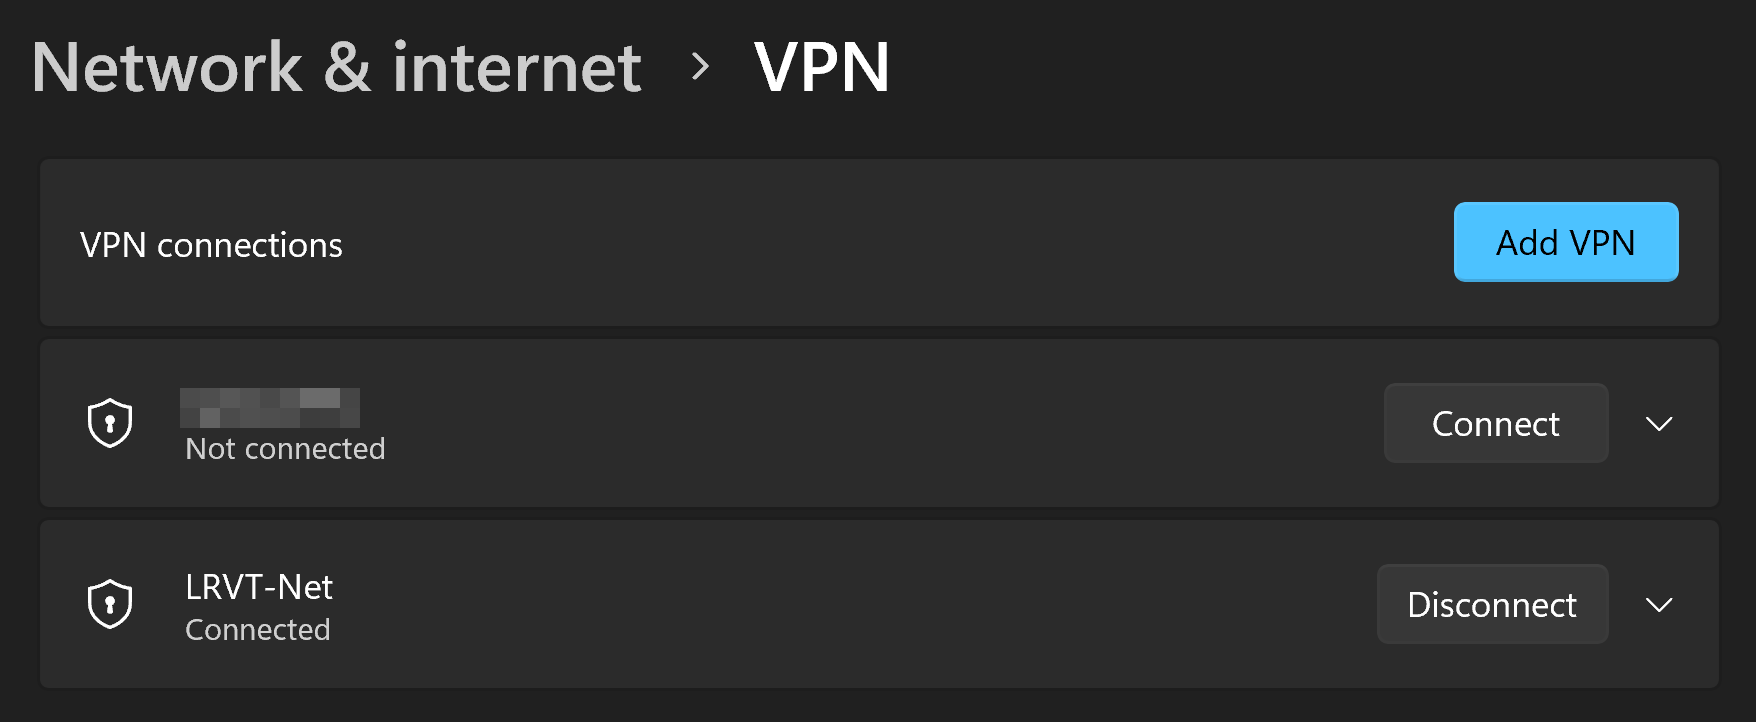 Dockerized IKEv2 VPN